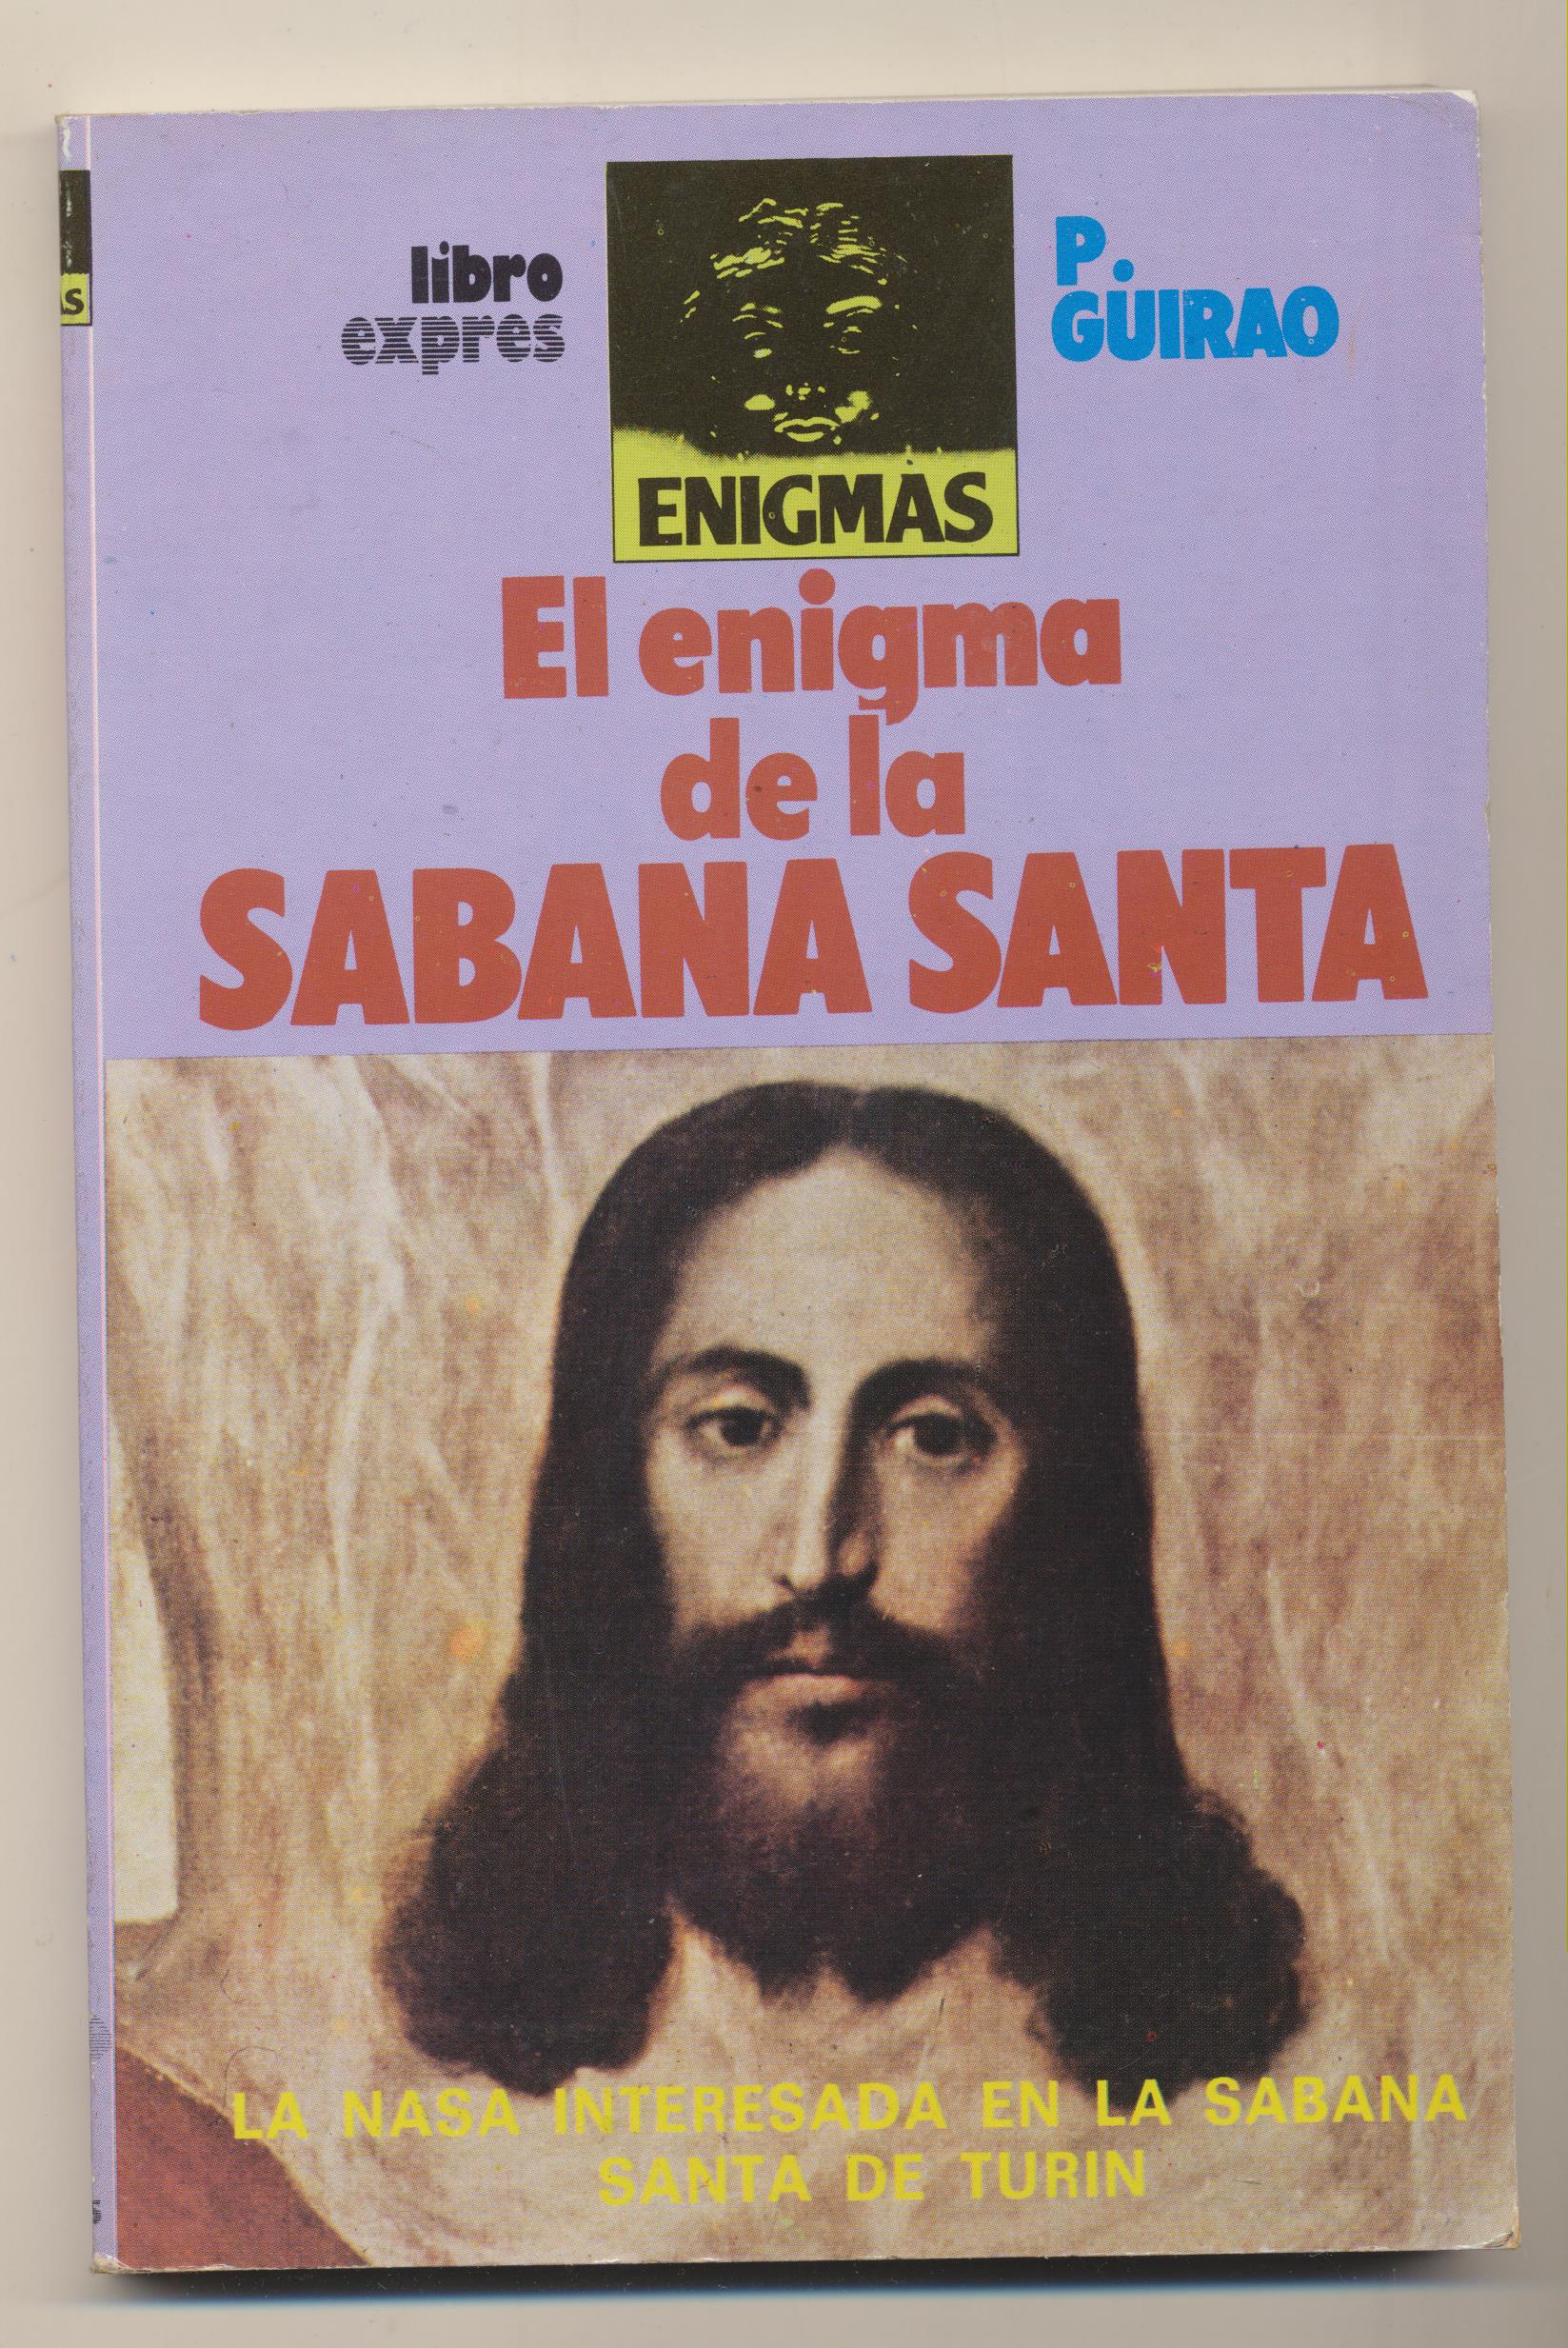 P. Guirao. El Enigma de la Sabana Santa. Libro Expres 1989. SIN USAR